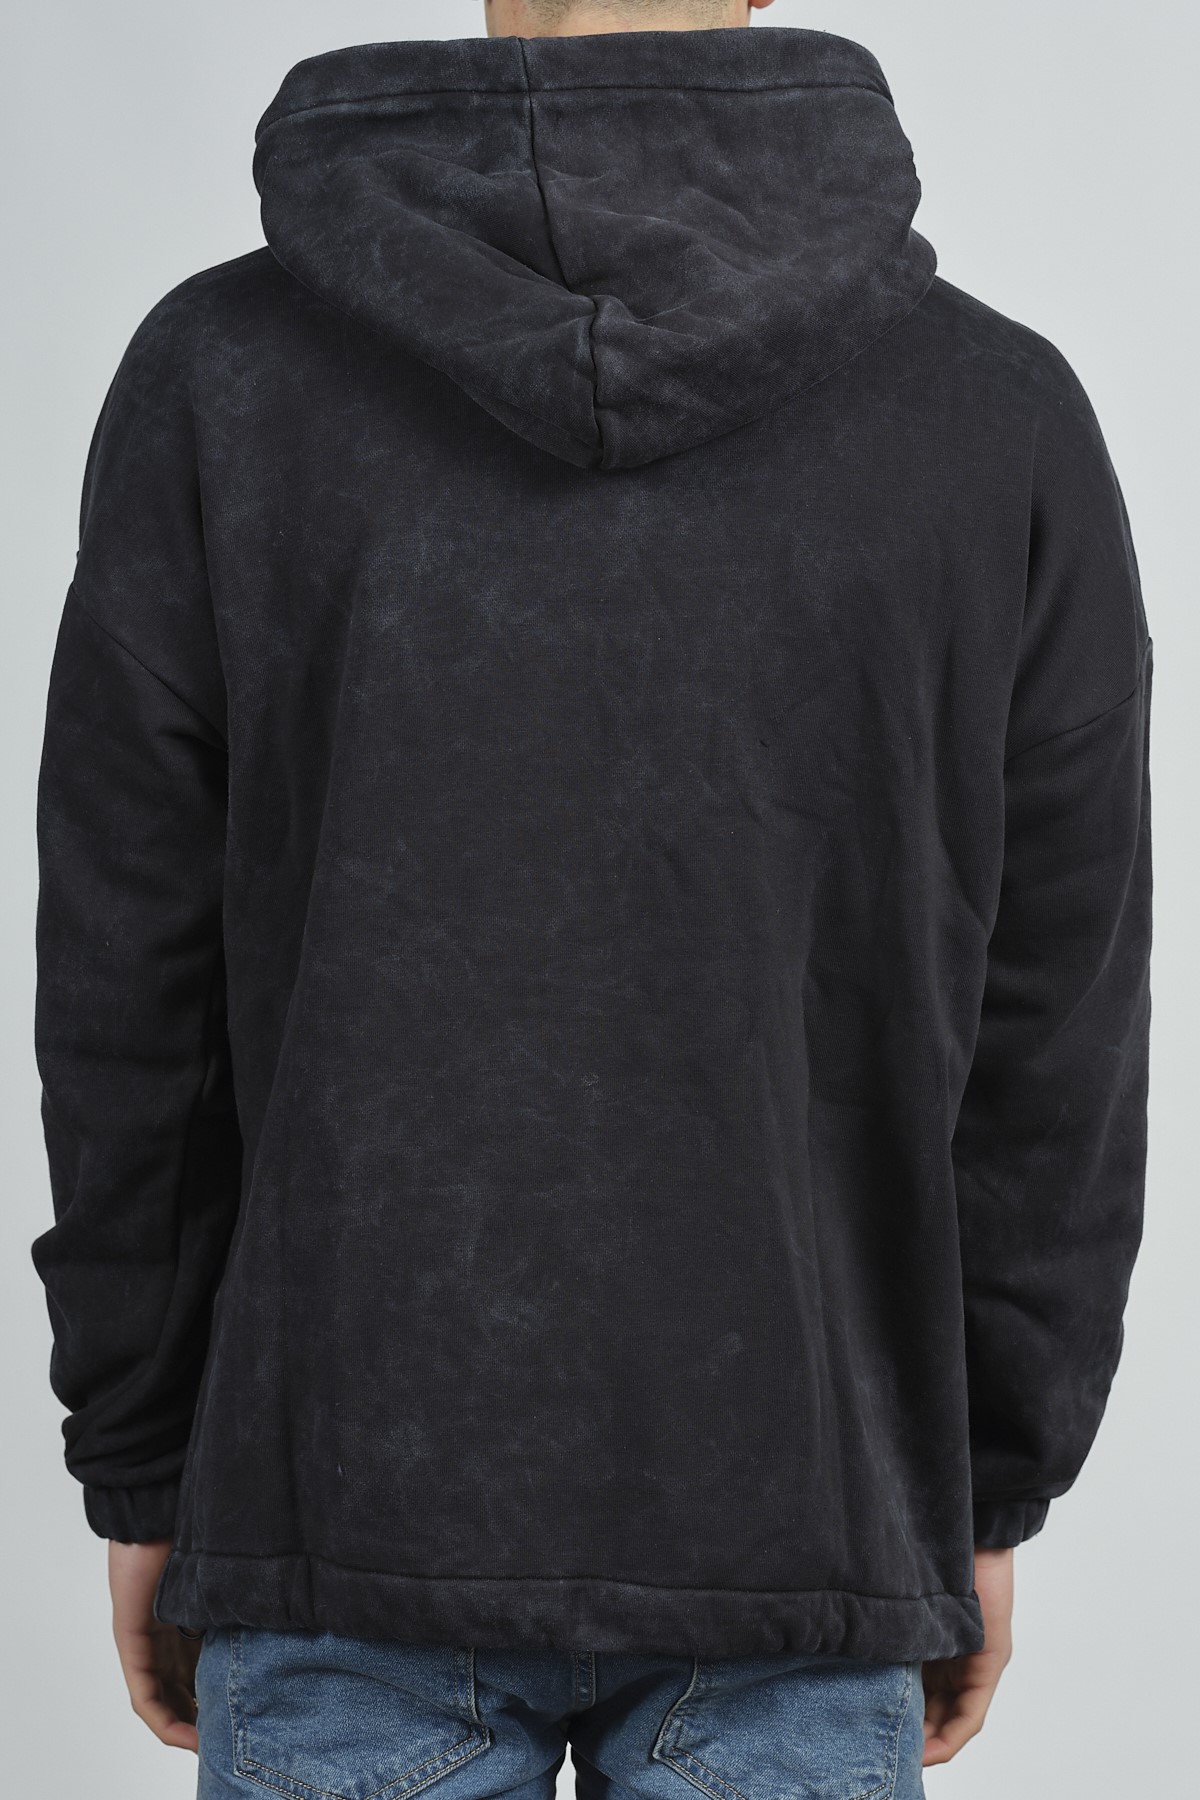 Siyah Yıkamalı Baskılı Sweatshirt 1KXE8-44282-02 - 3